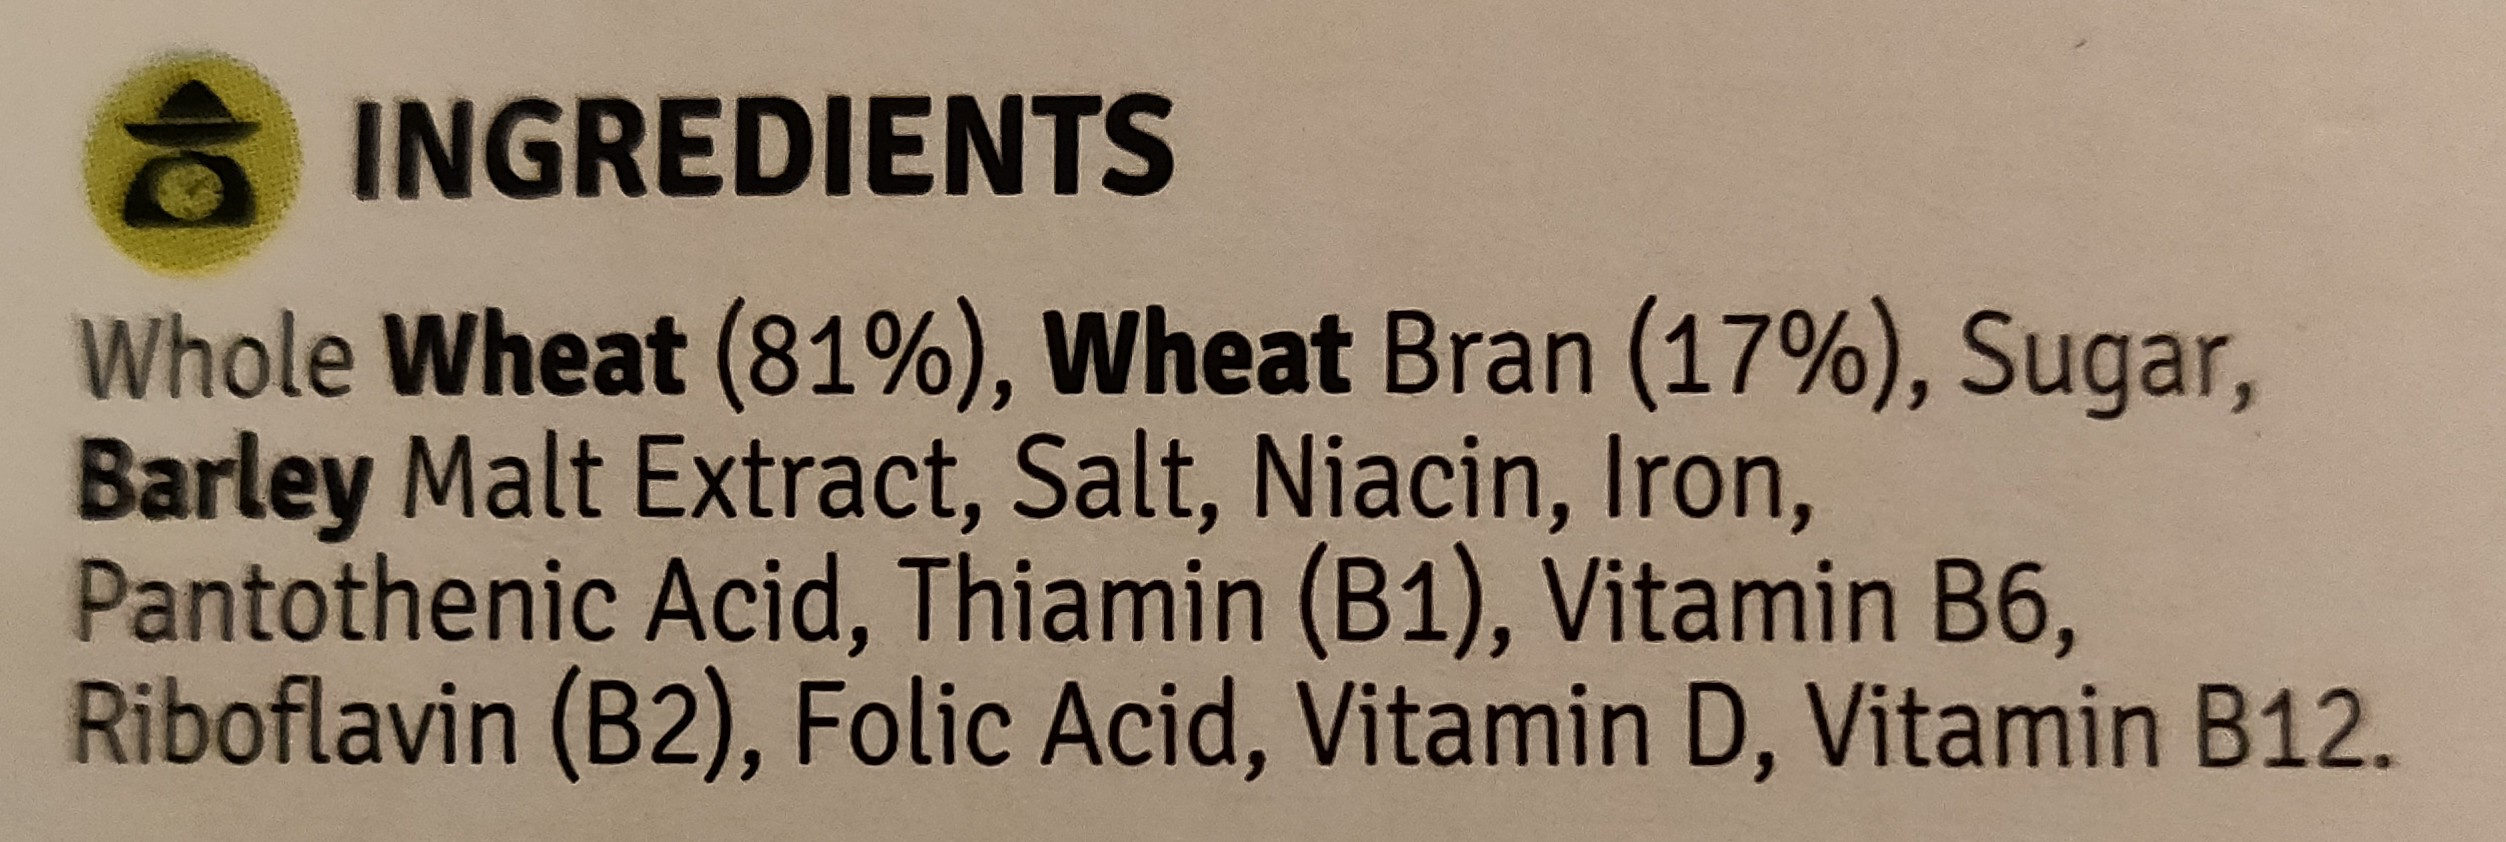 Bran flakes - Ingredients